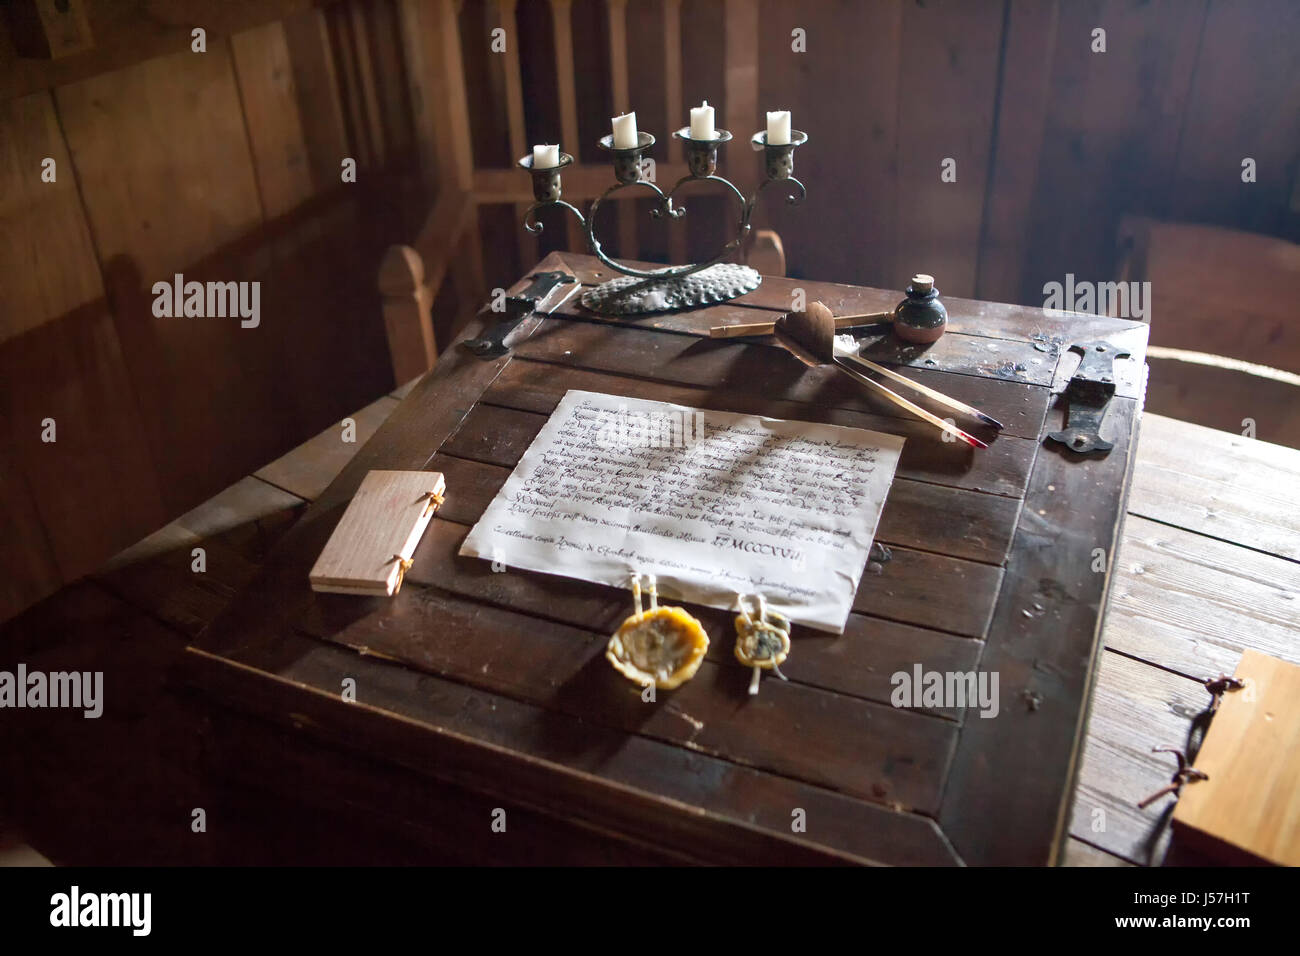 Der Schreibtisch im Schlafzimmer des rekonstruierten mittelalterlichen  Hauses, Nienovers, Bodenfelde, Niedersachsen, Deutschland Stockfotografie -  Alamy